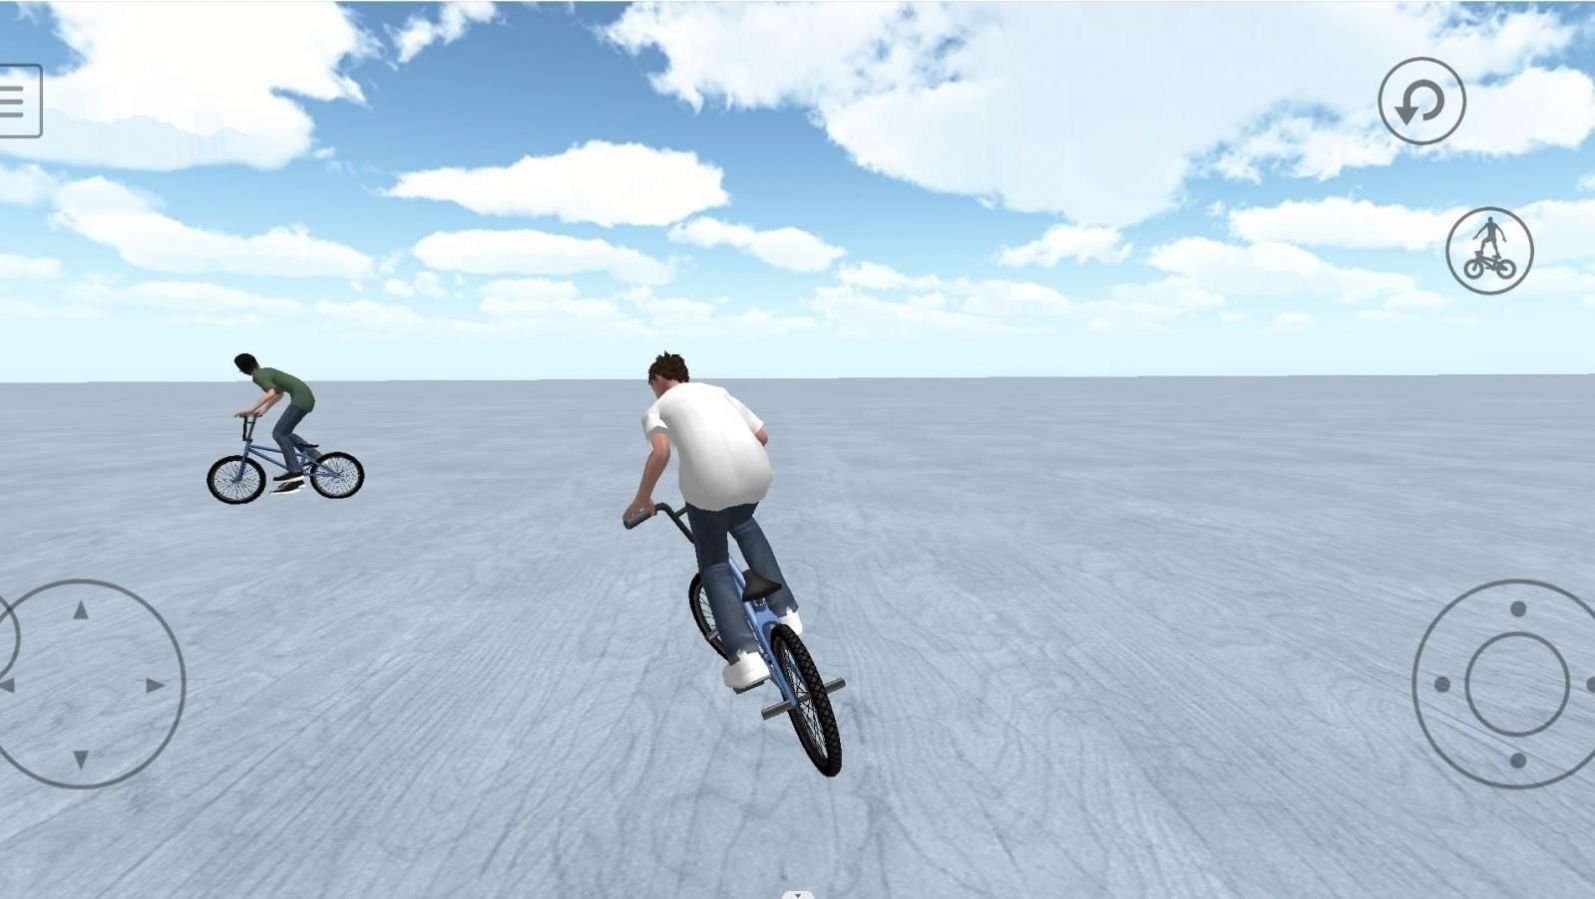 3D自行车终极狂飙